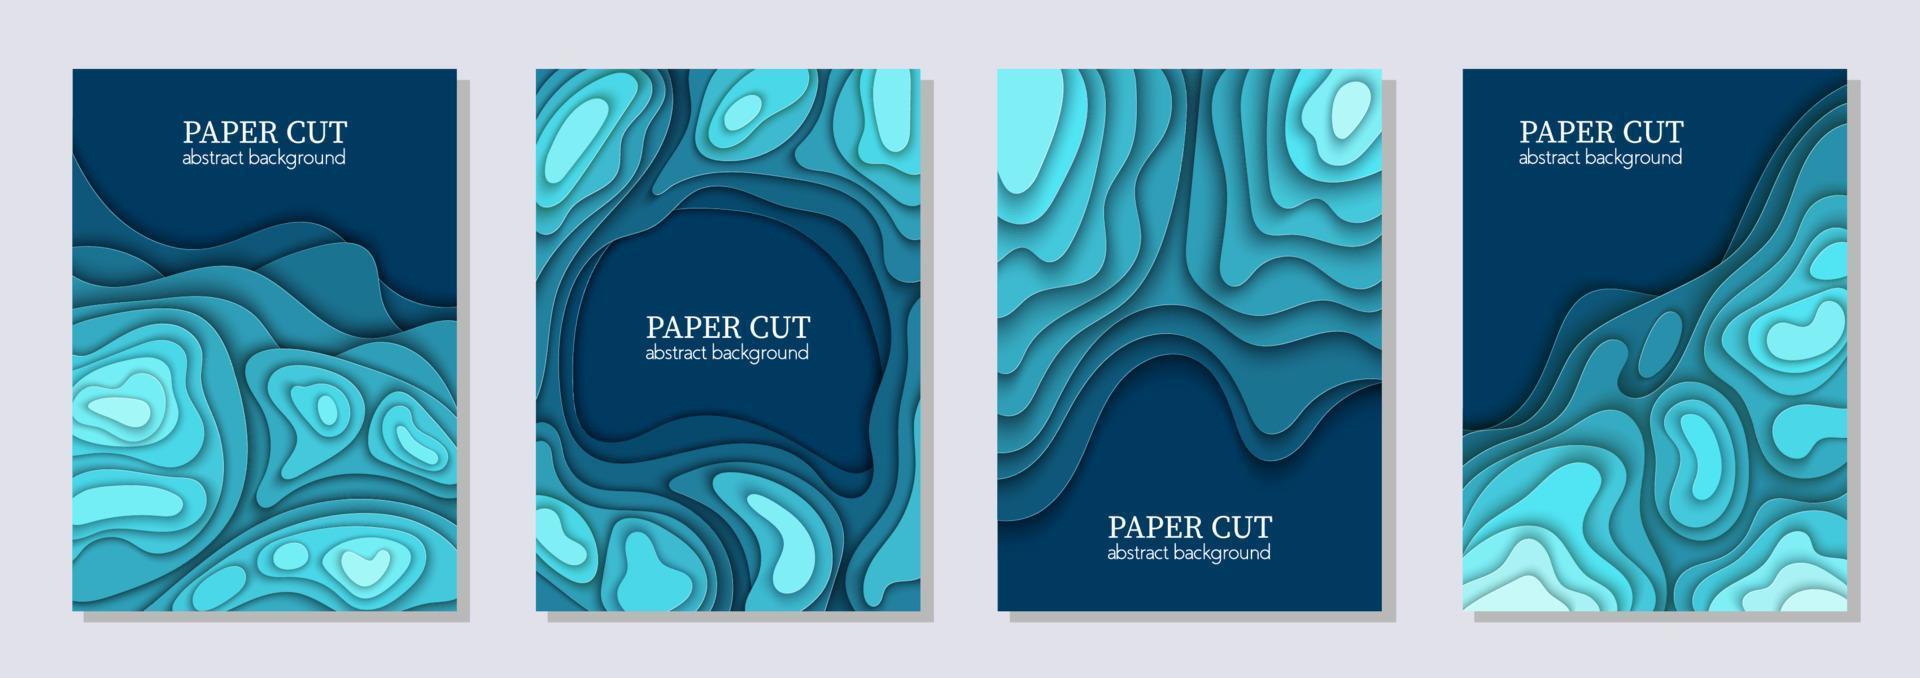 conjunto de vetores verticais de 4 panfletos azuis com formas de ondas de corte de papel. Arte de papel abstrato 3D, layout de design para apresentações de negócios, folhetos, cartazes, estampas, decoração, cartões, capa de folheto.